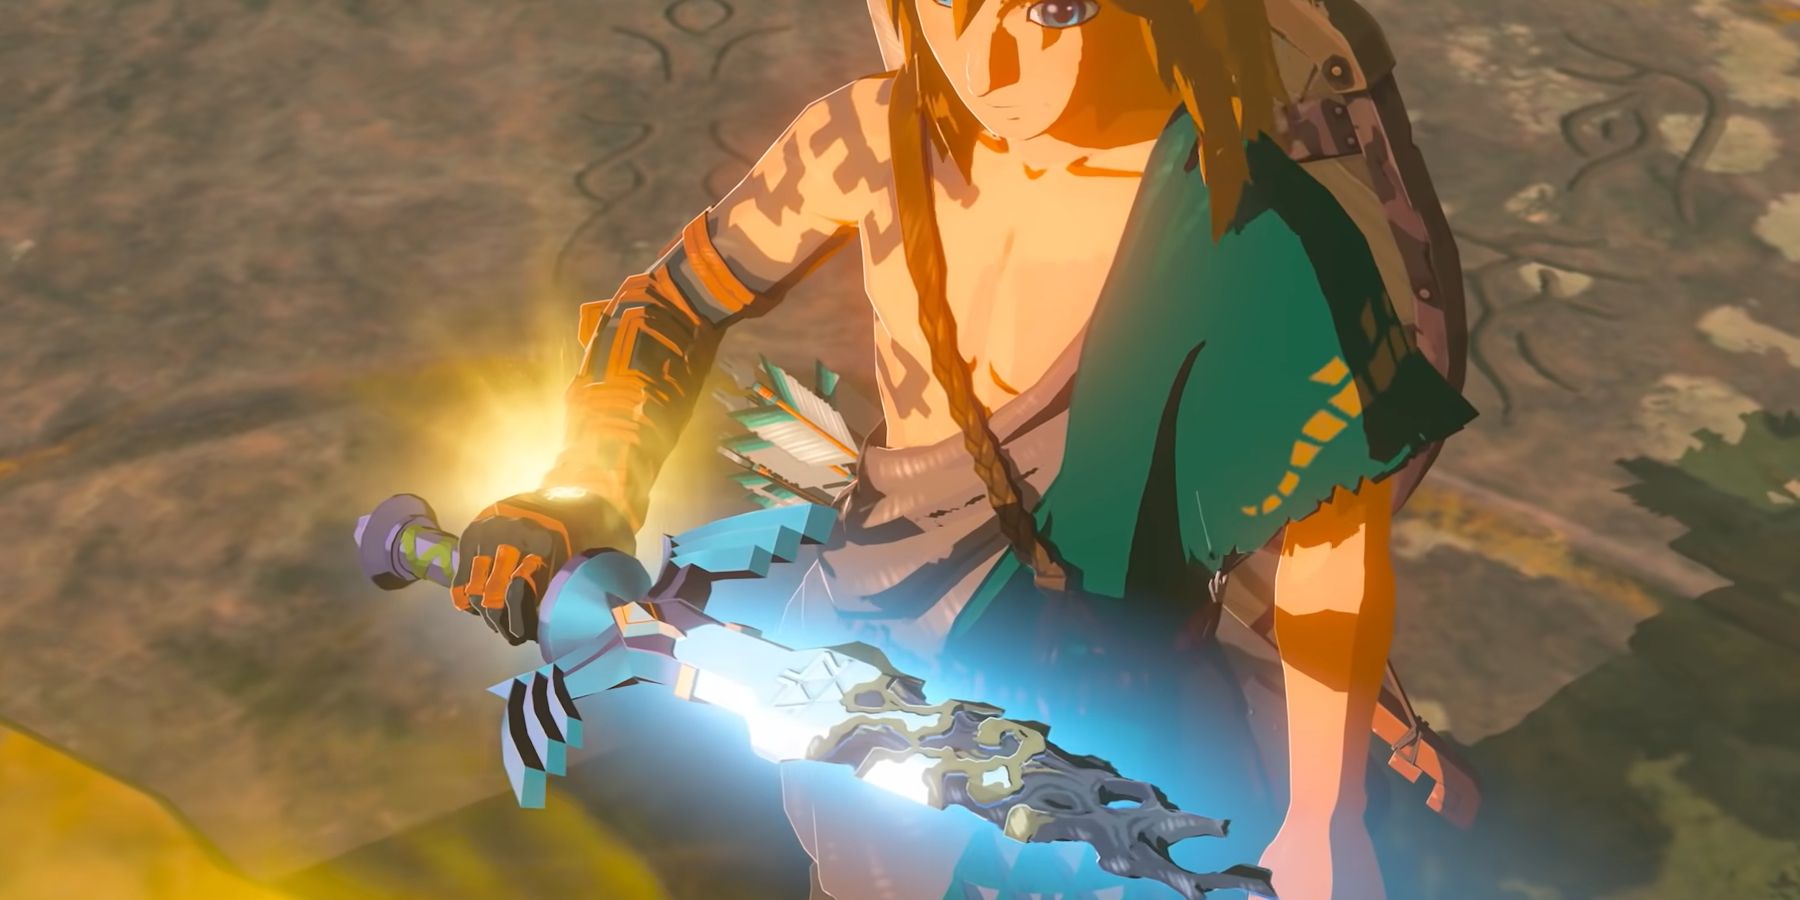 Link in The Legend of Zelda: Breath of the Wild 2 holding the broken Master Sword